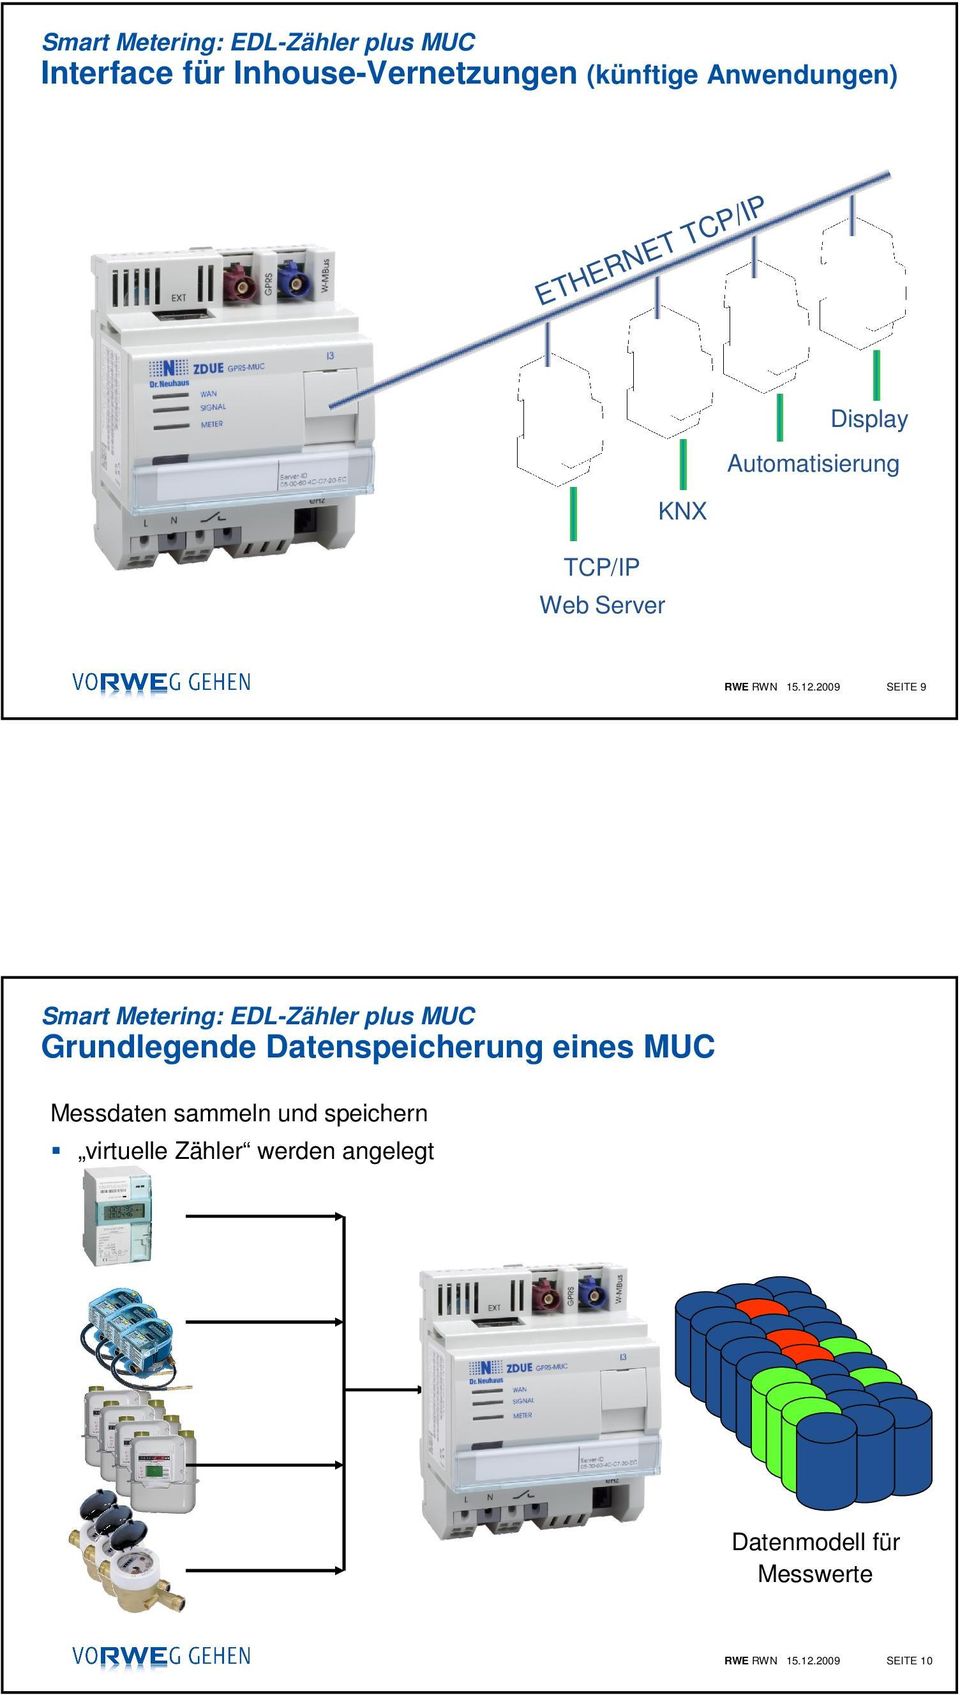 2009 SEITE 9 Smart Metering: EDL-Zähler plus MUC Grundlegende Datenspeicherung eines MUC